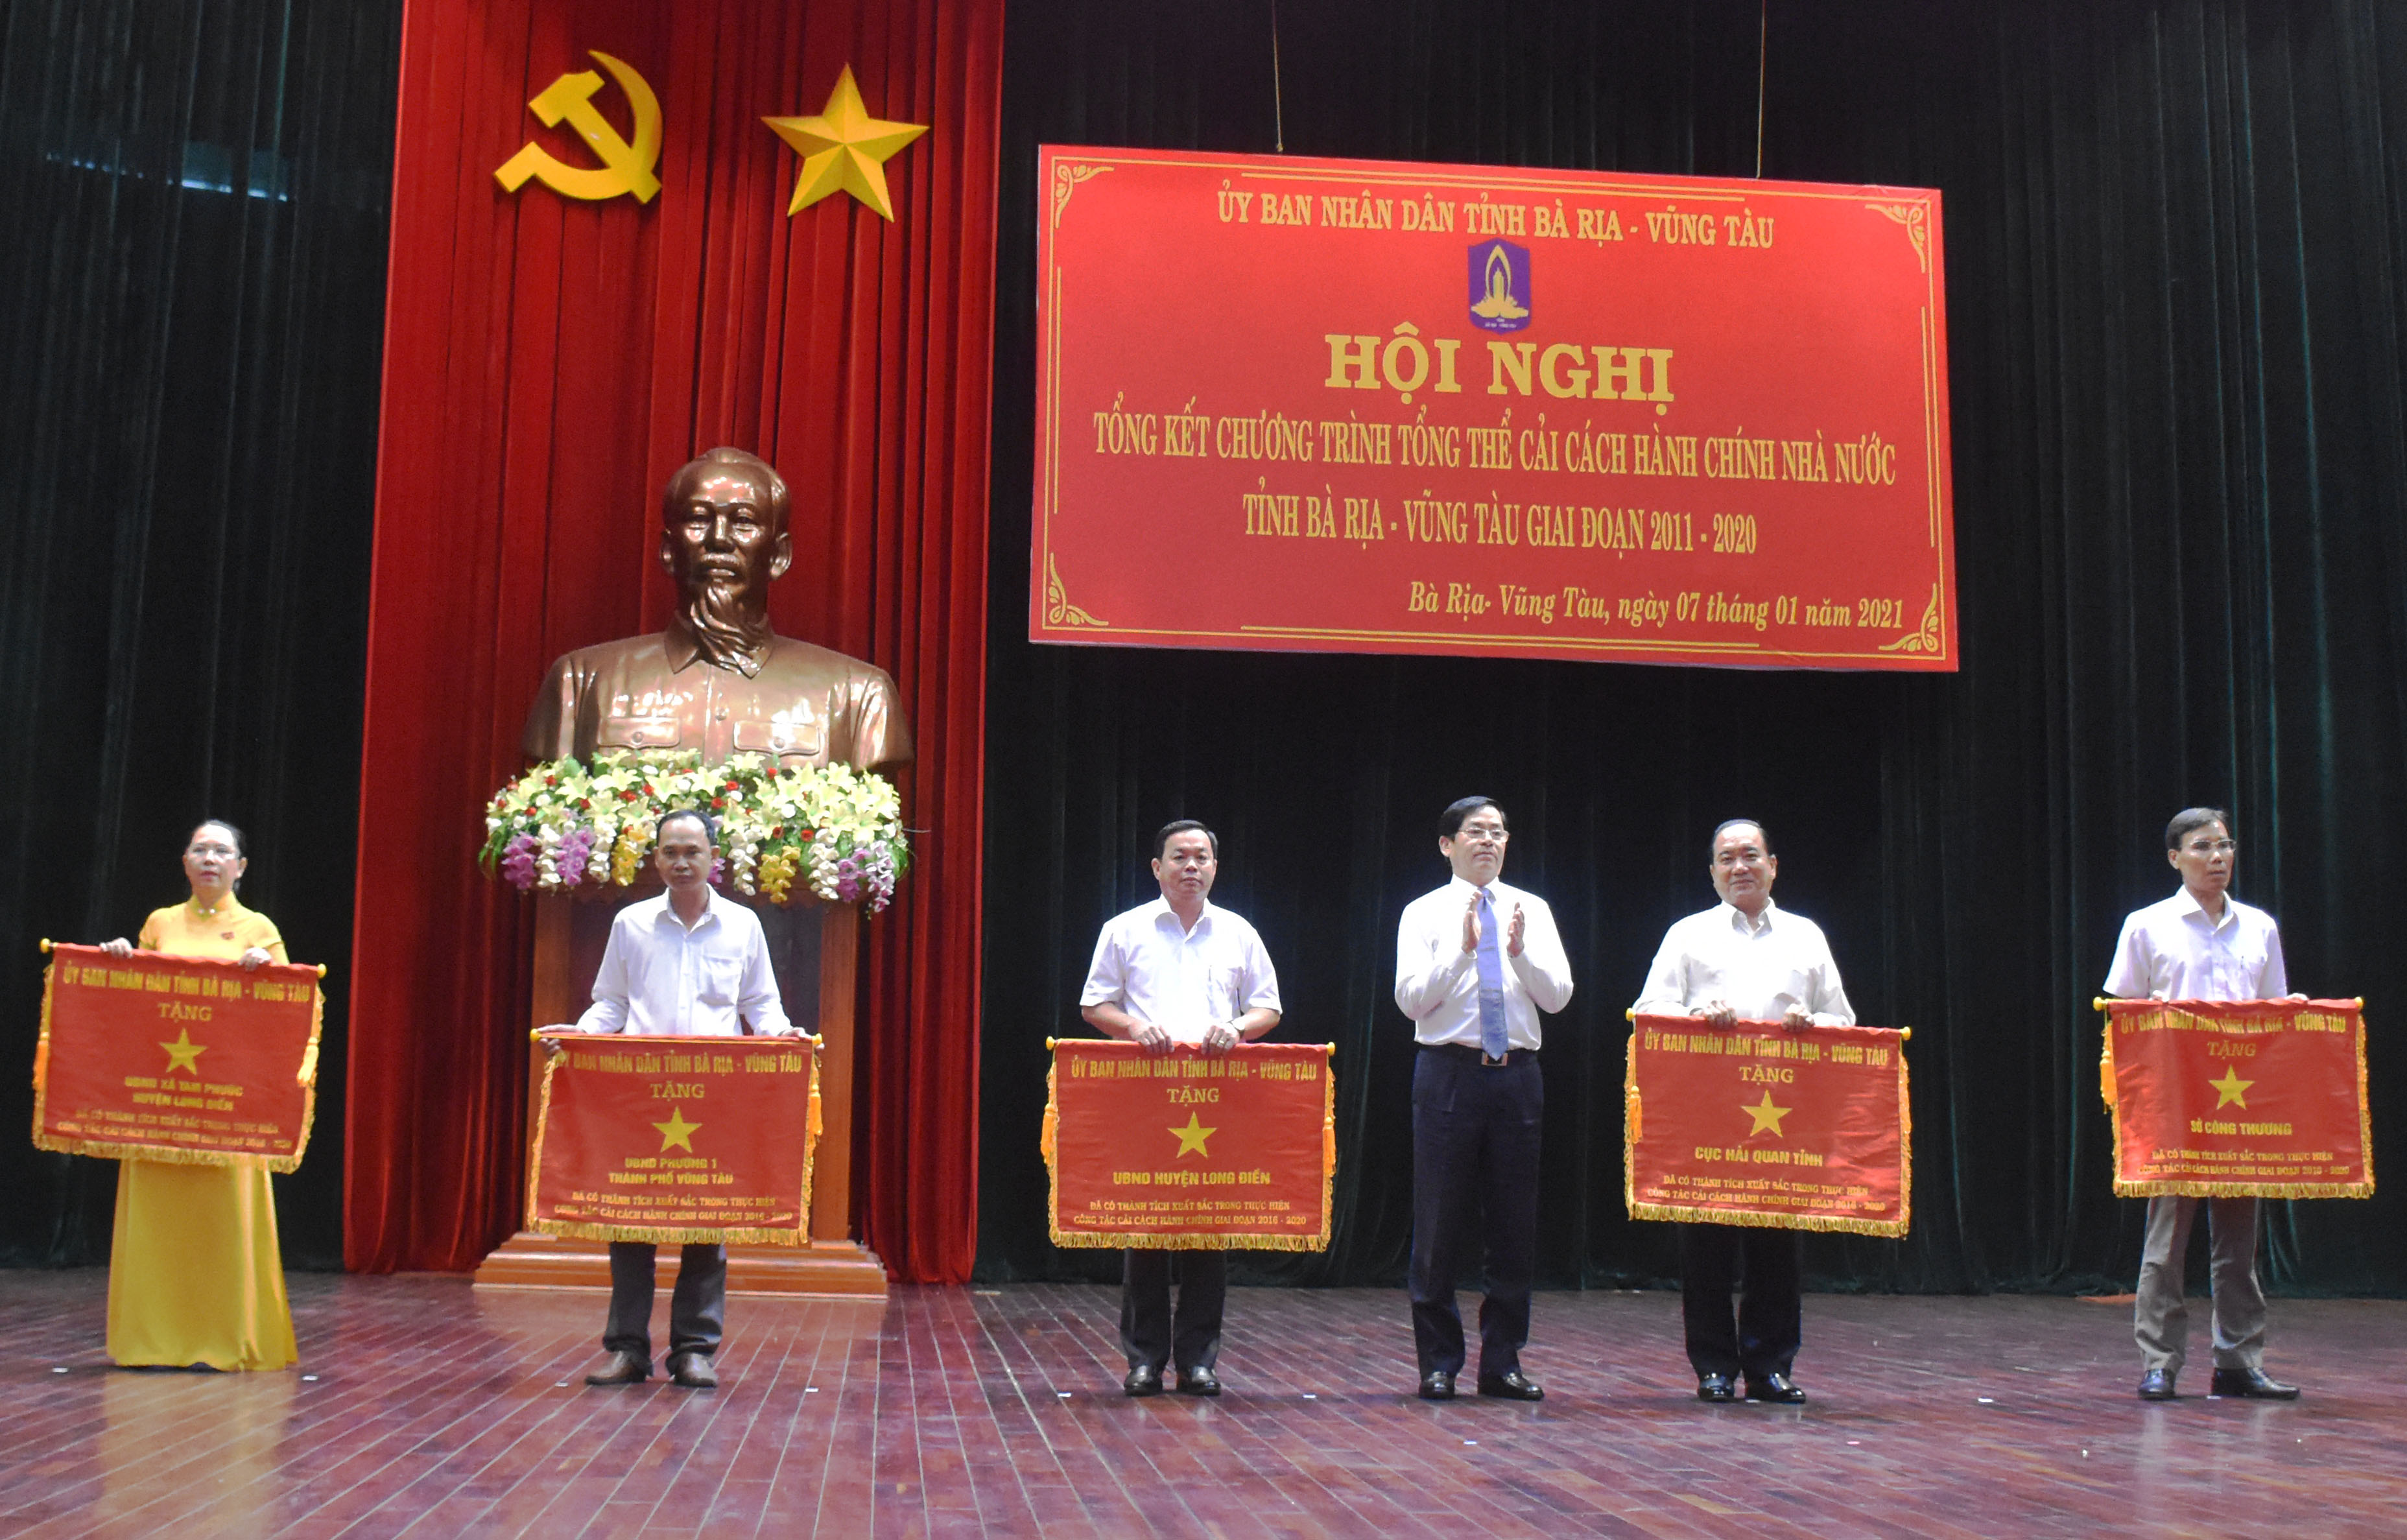 Ông Phạm Viết Thanh, Ủy viên Trung ương Đảng, Bí thư Tỉnh ủy trao Cờ thi đua cho các tập thể có thành tích xuất sắc trong công tác CCHC nhà nước giai đoạn 2016-2020.